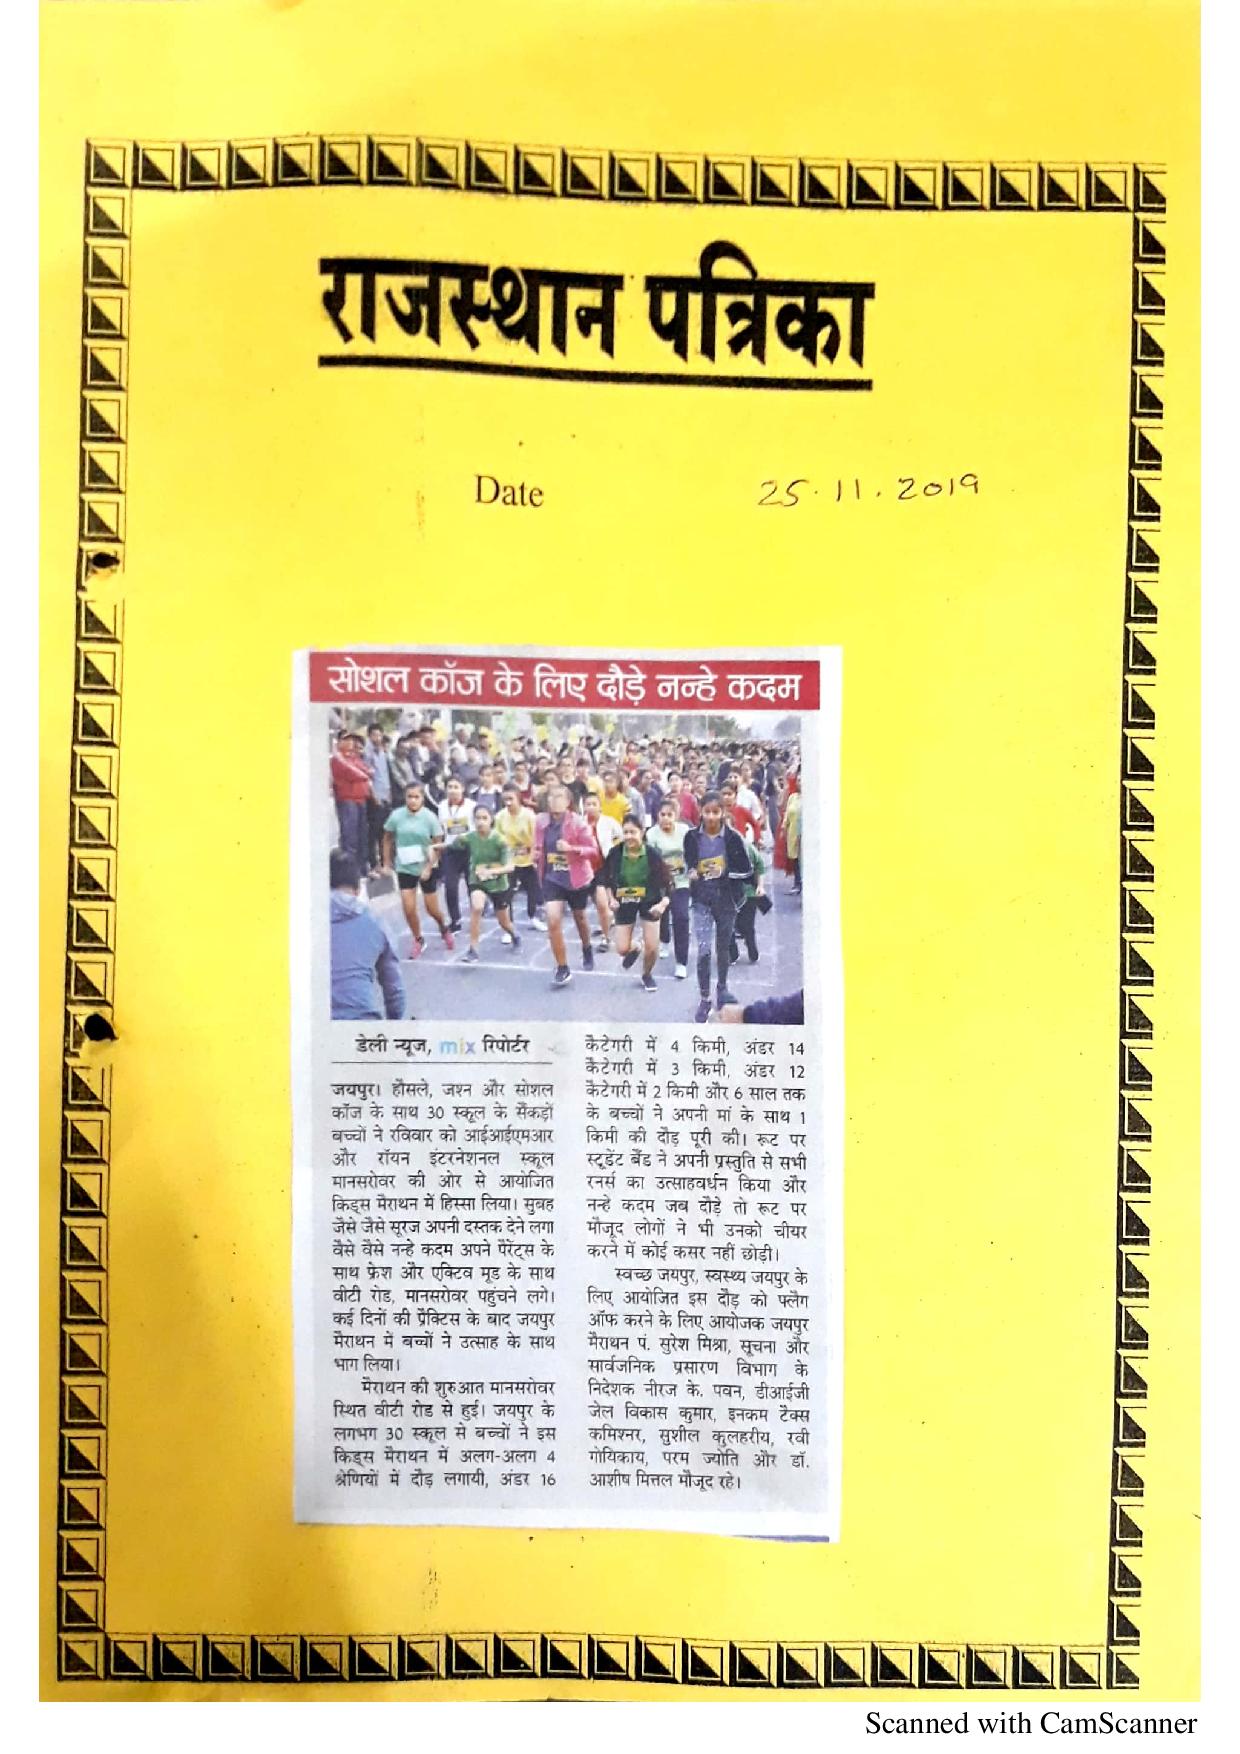 Kids Marathon’ - Rajasthan Patrika, Dainik Bhaskar - Ryan International School, Jagatpura